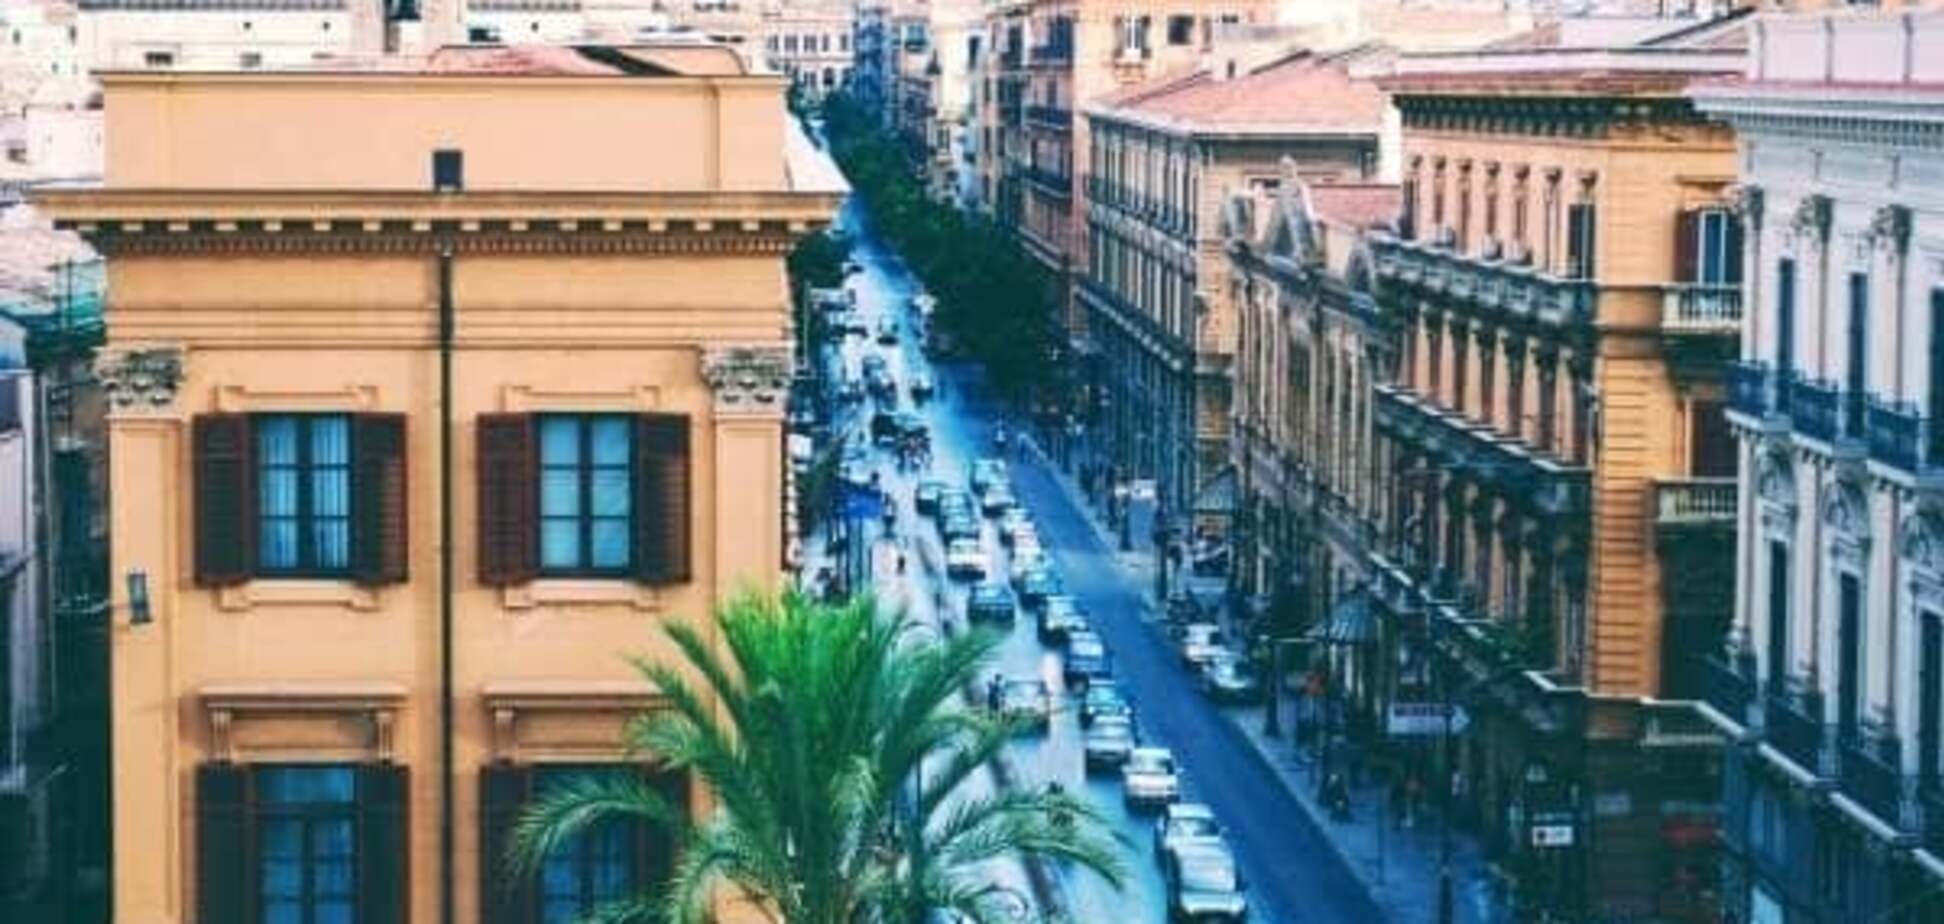 Сицилия